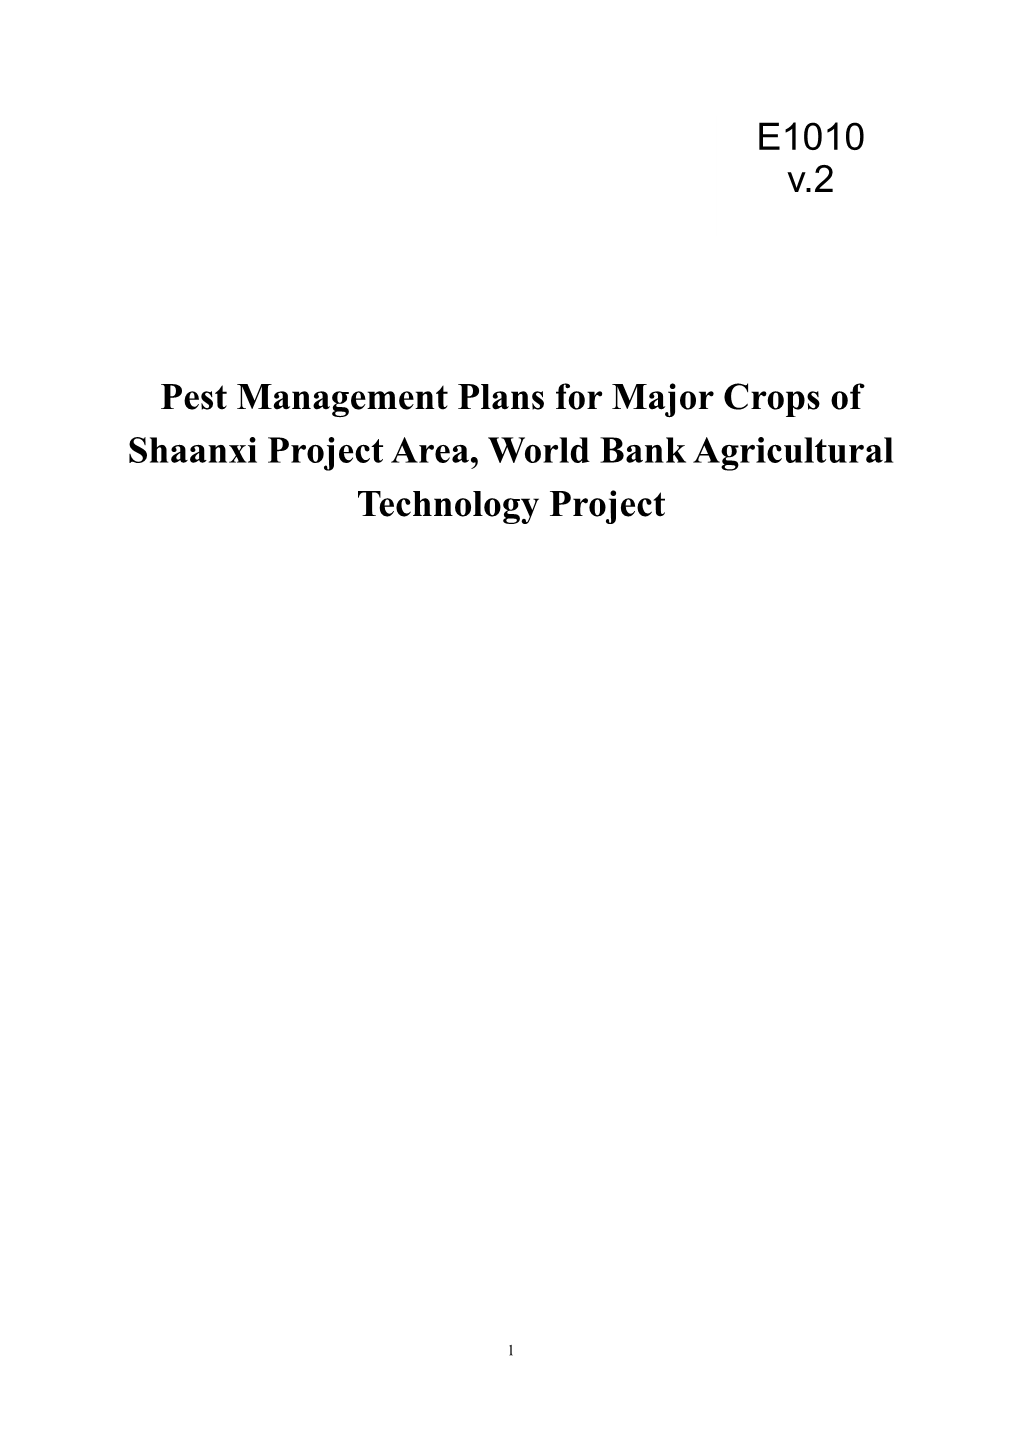 Pest Management Plans for Major Crops Of